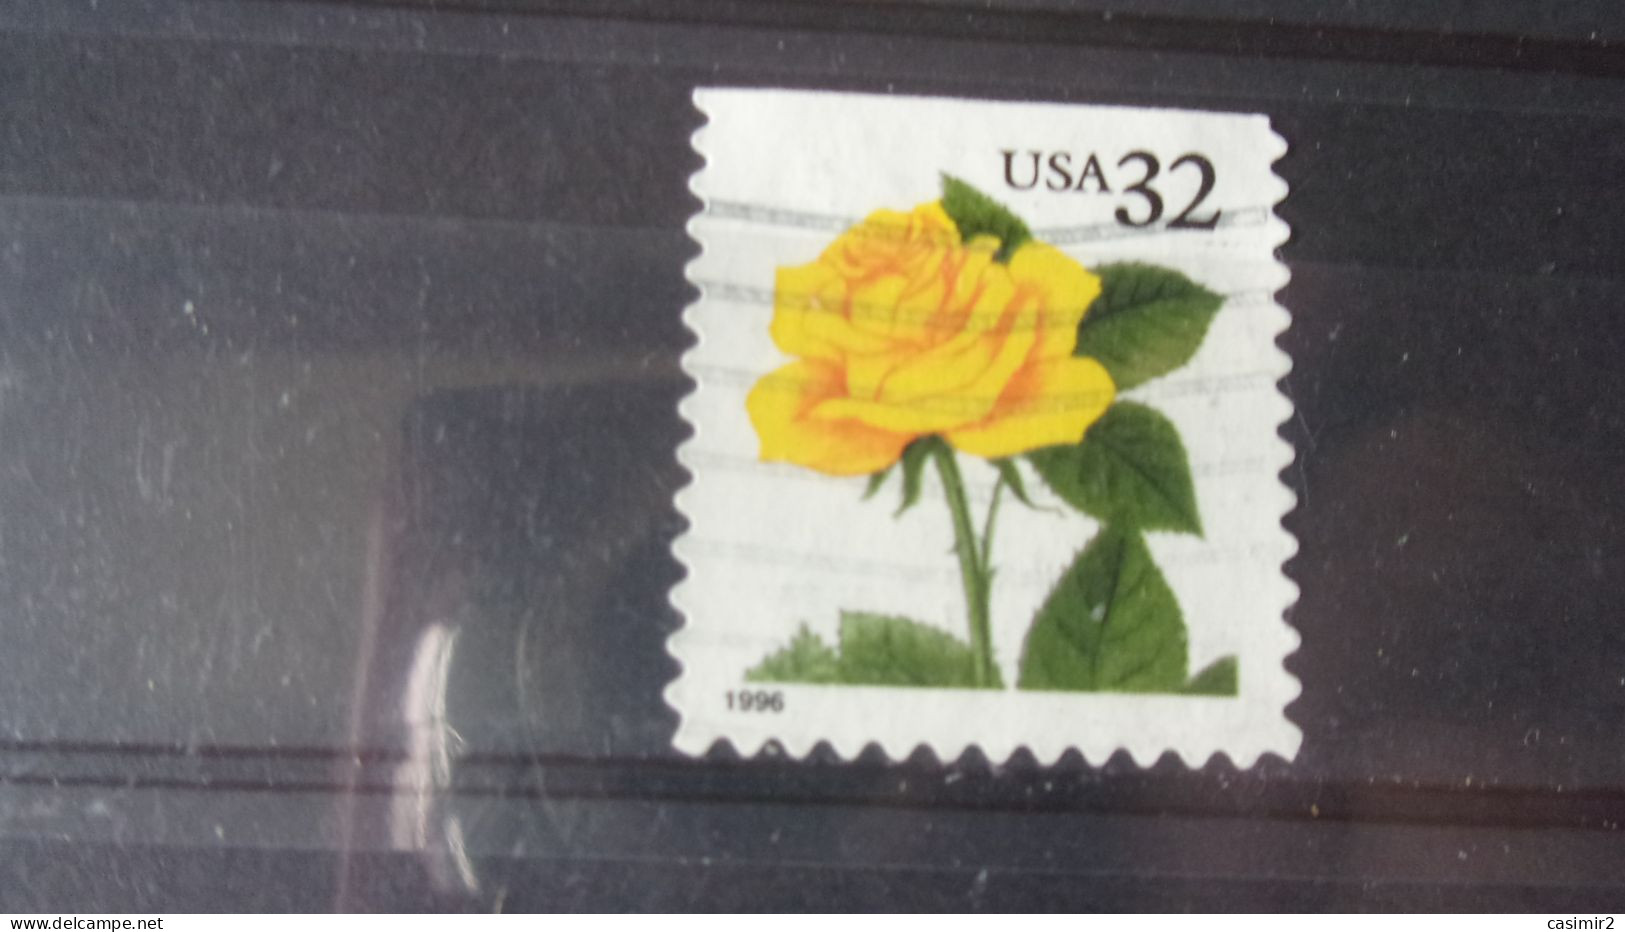 ETATS UNIS YVERT N° 2568 - Used Stamps